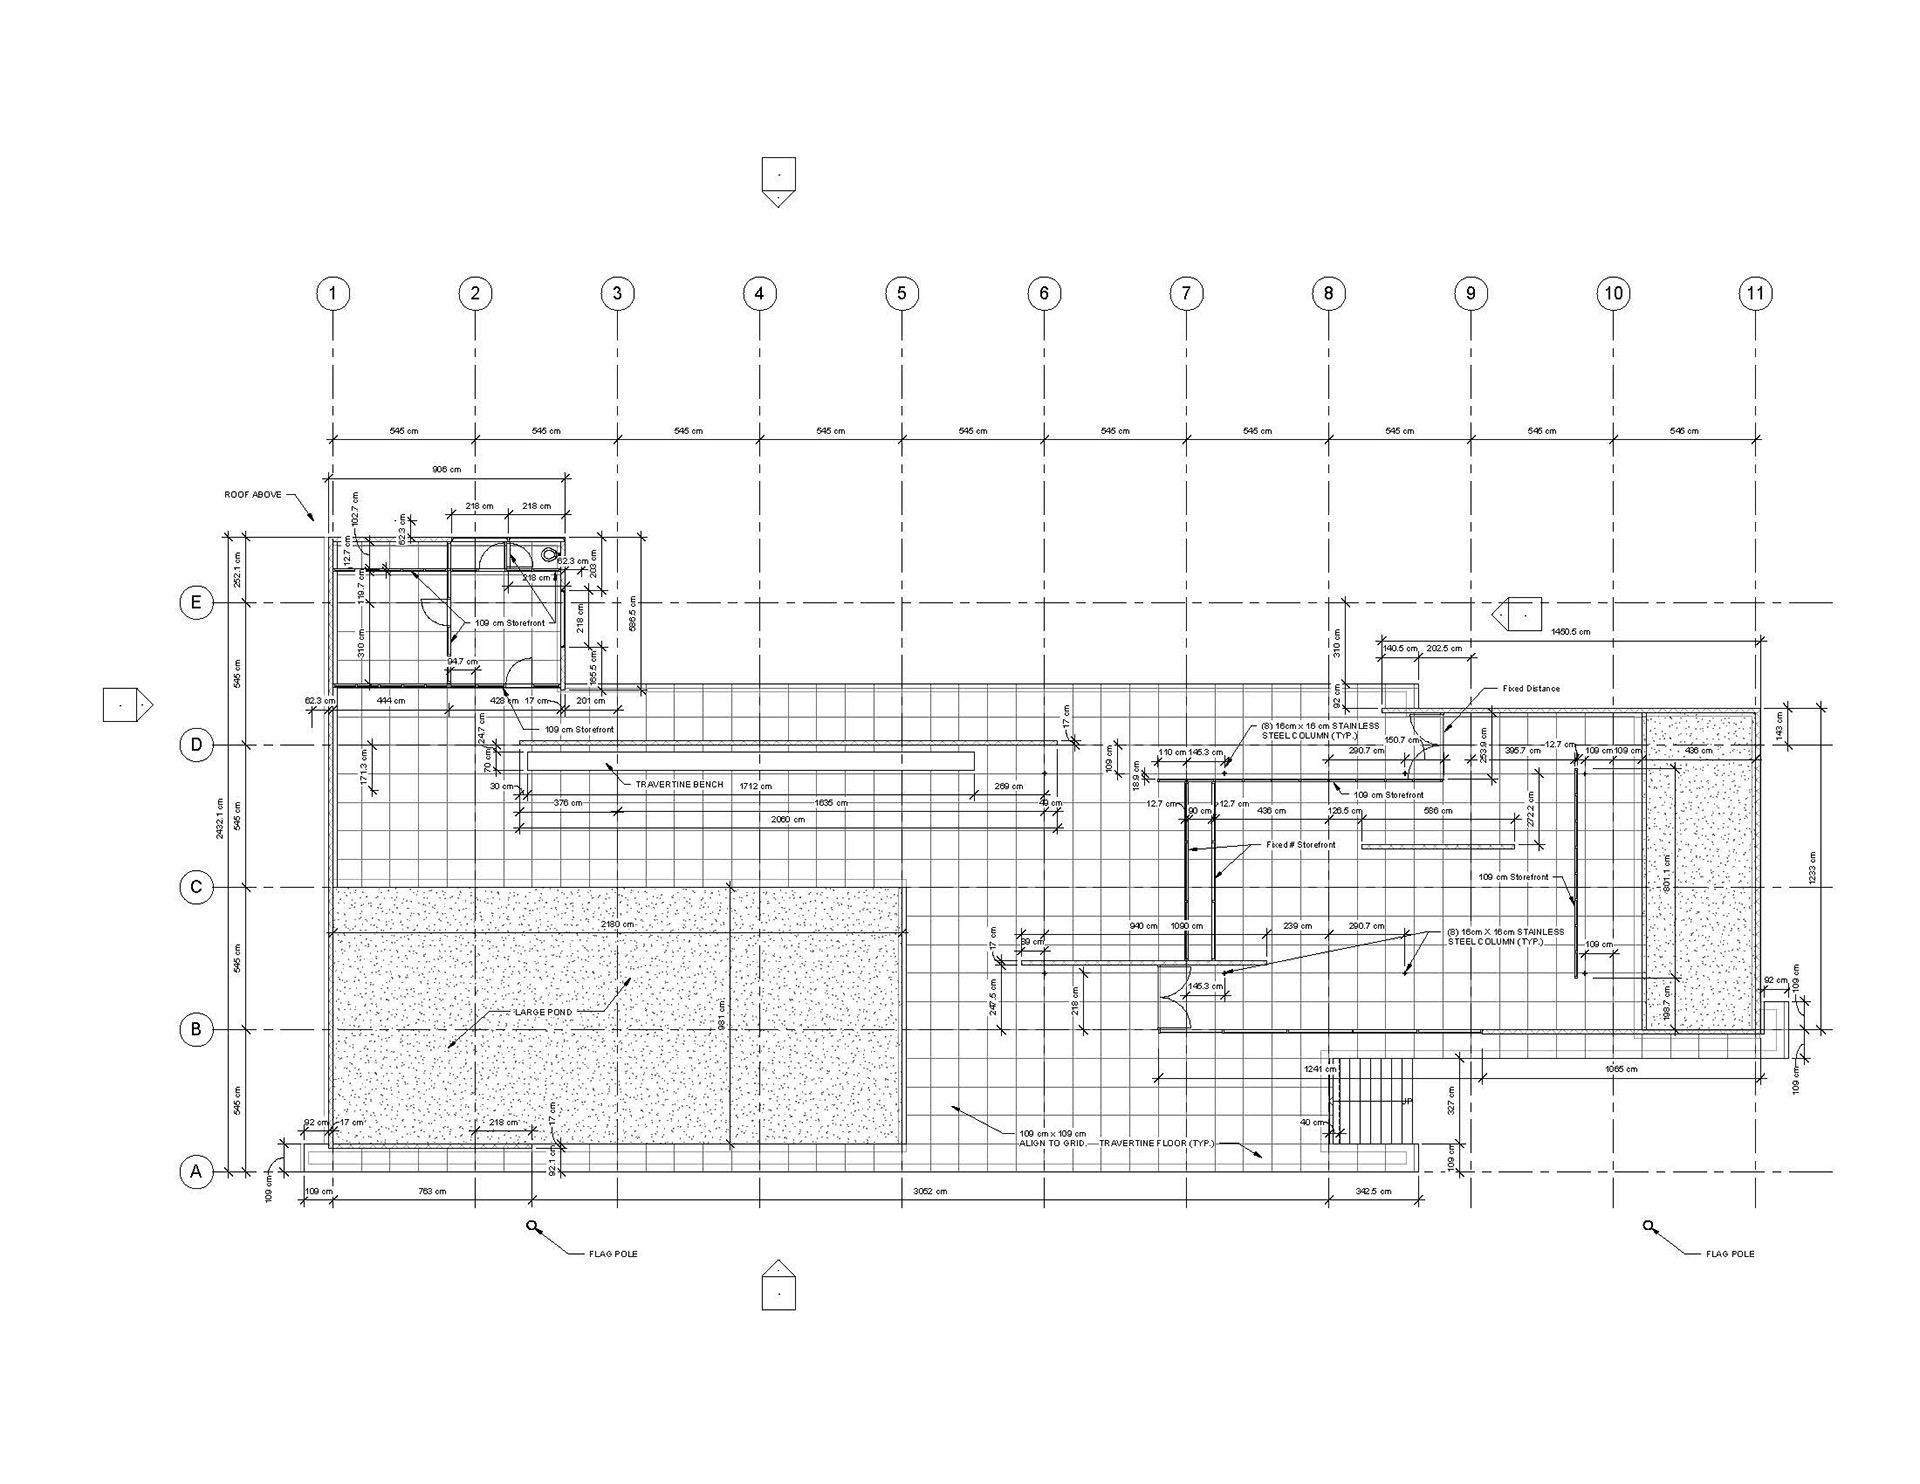 有谁知道巴塞罗那博览会德国馆的尺寸吗建筑课模型作业急需